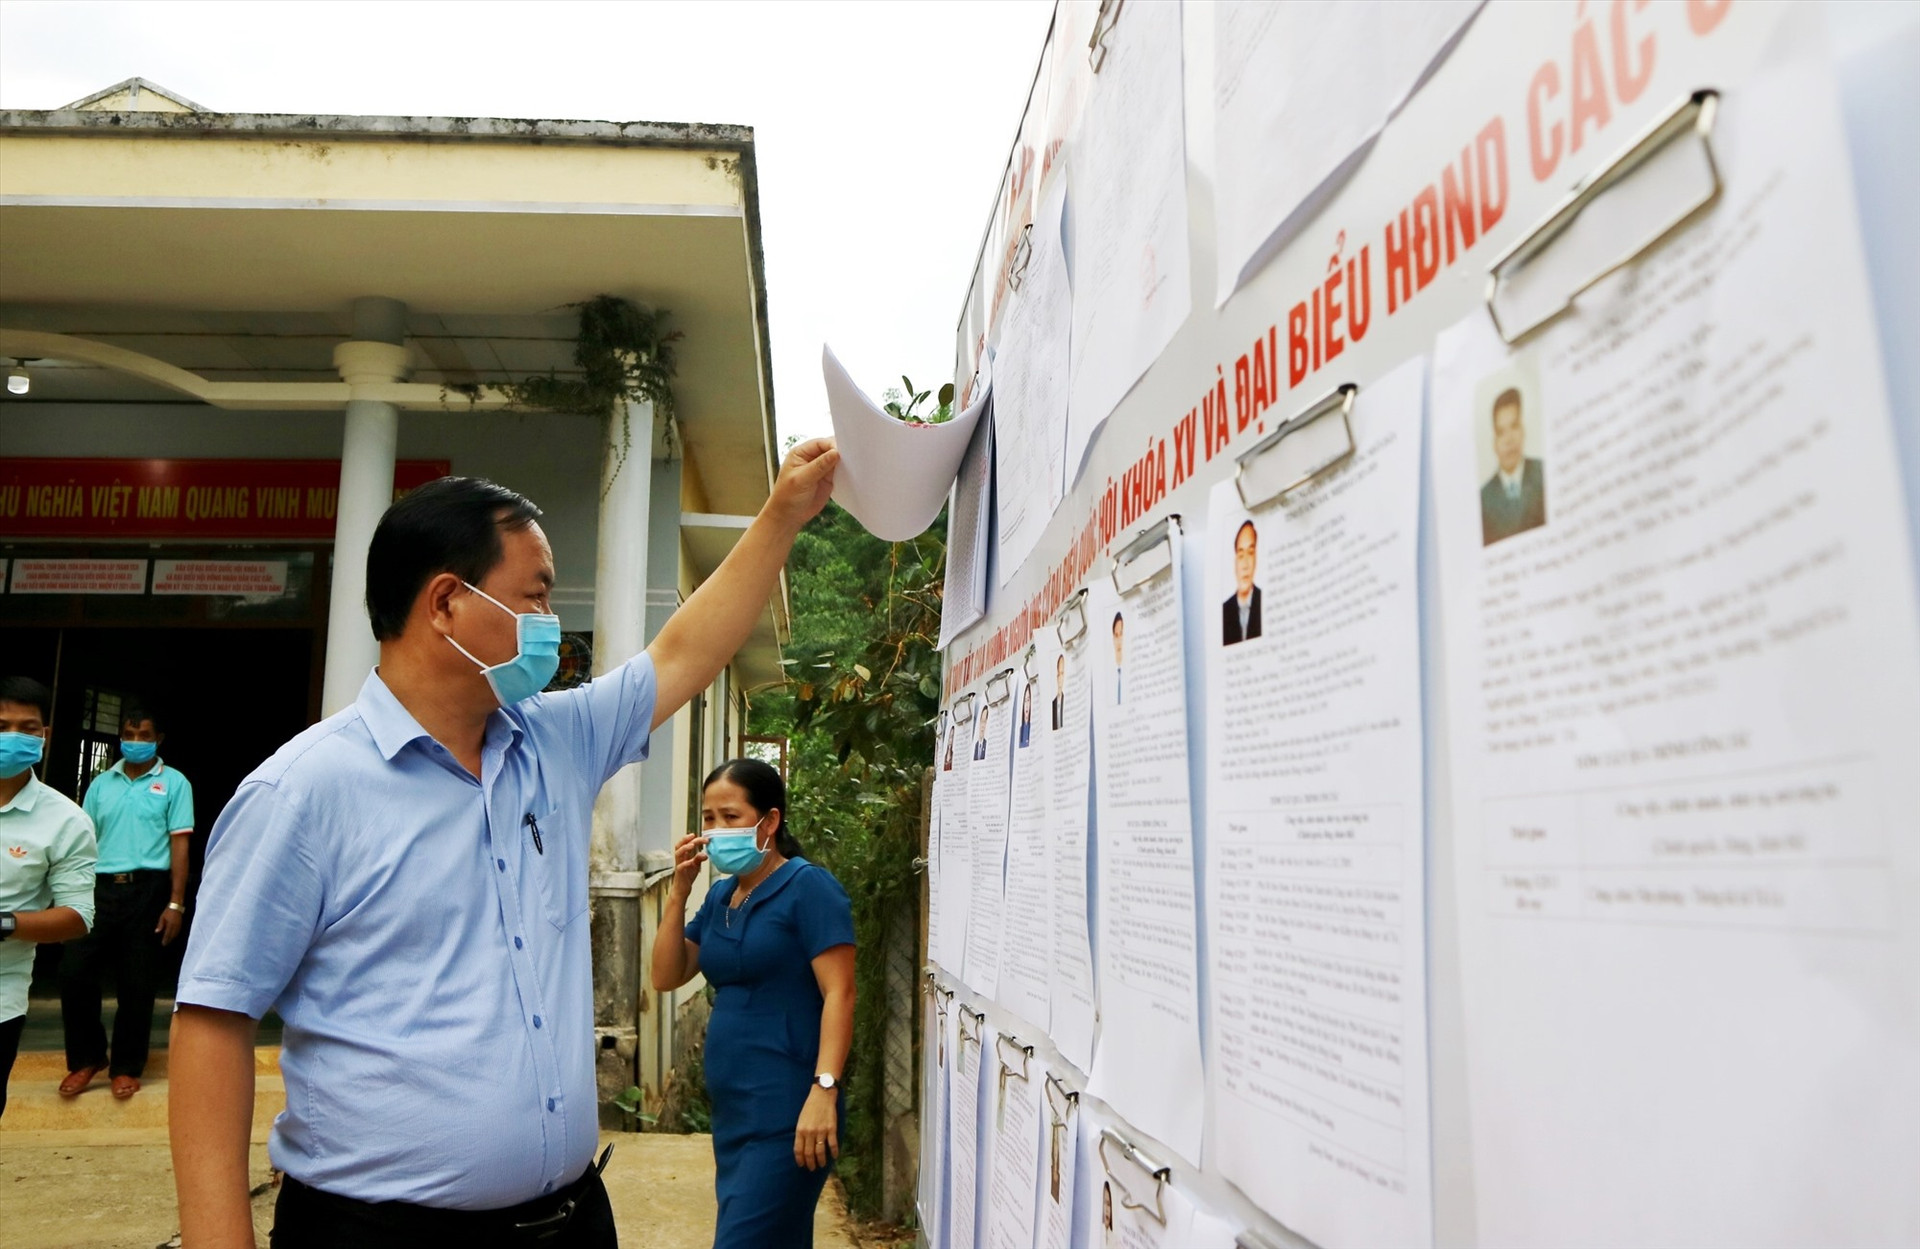 Đồng chí Nguyễn Hồng Quang kiểm tra danh sách cử tri, danh sách người ứng cử được niêm yết tại một đơn vị bầu cử huyện Đông Giang. Ảnh: A.N